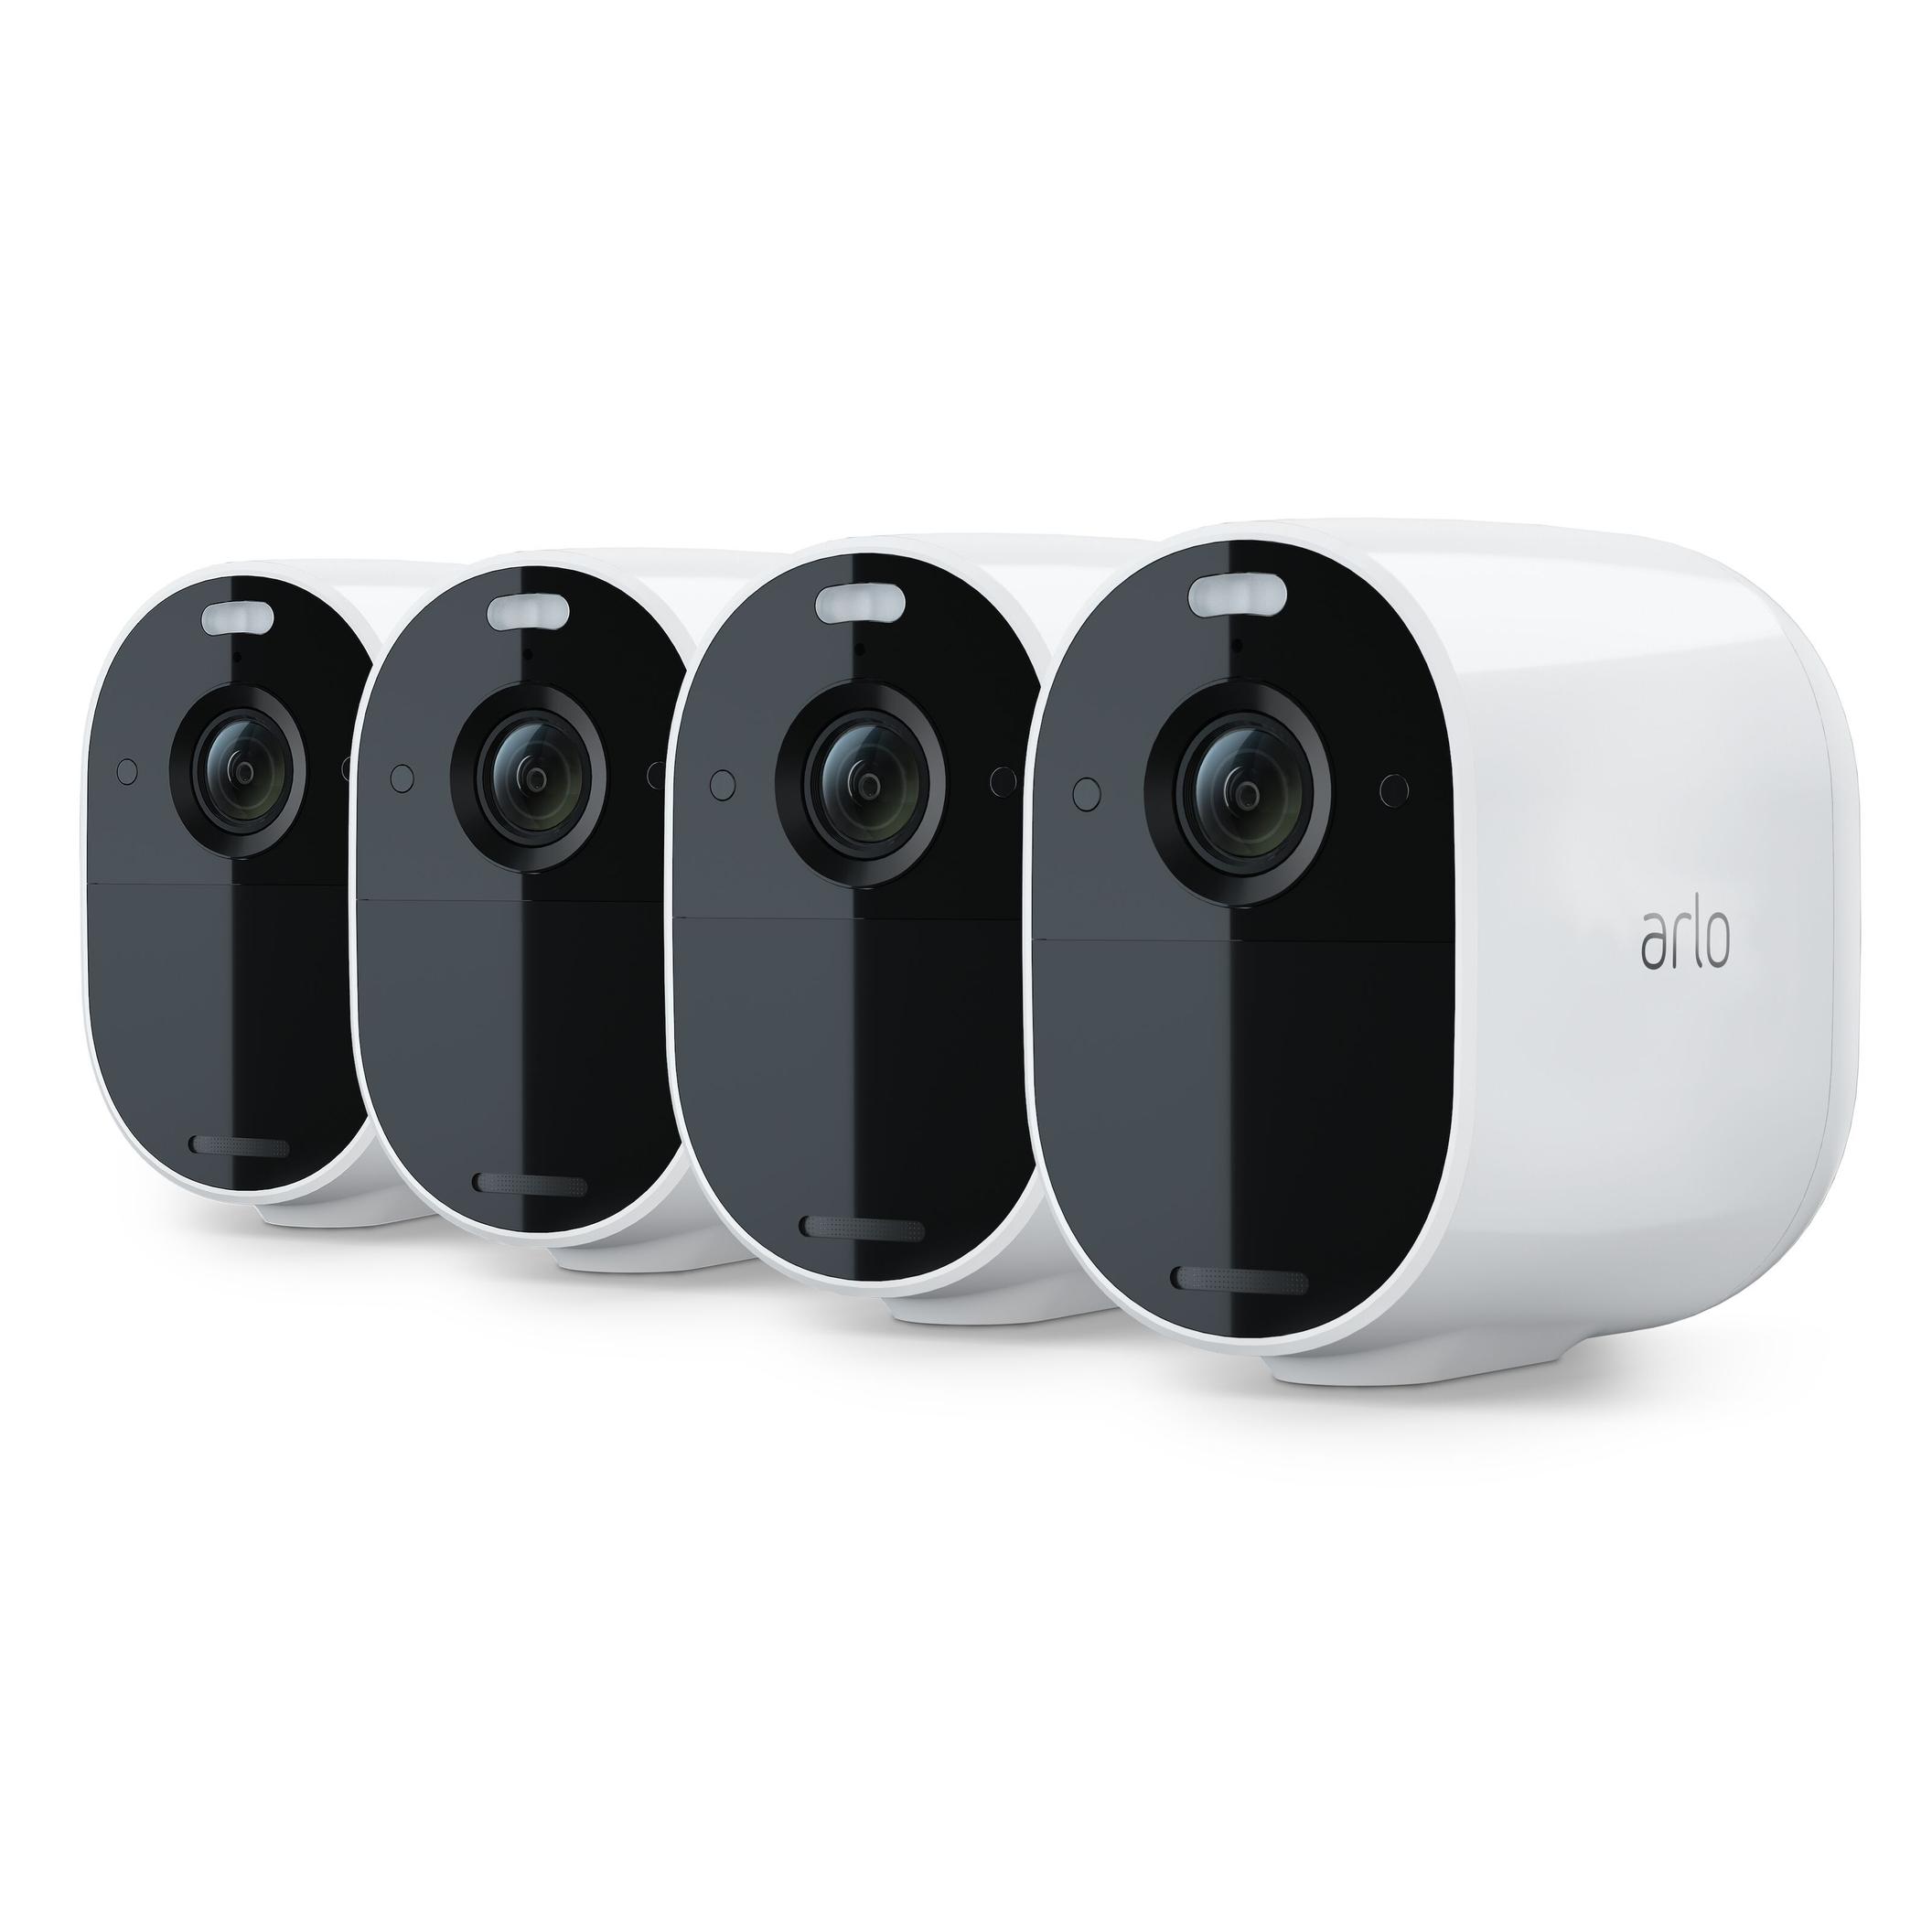 Essential Övervakningskamera 4-pack för 2990 kr på Kjell & Company